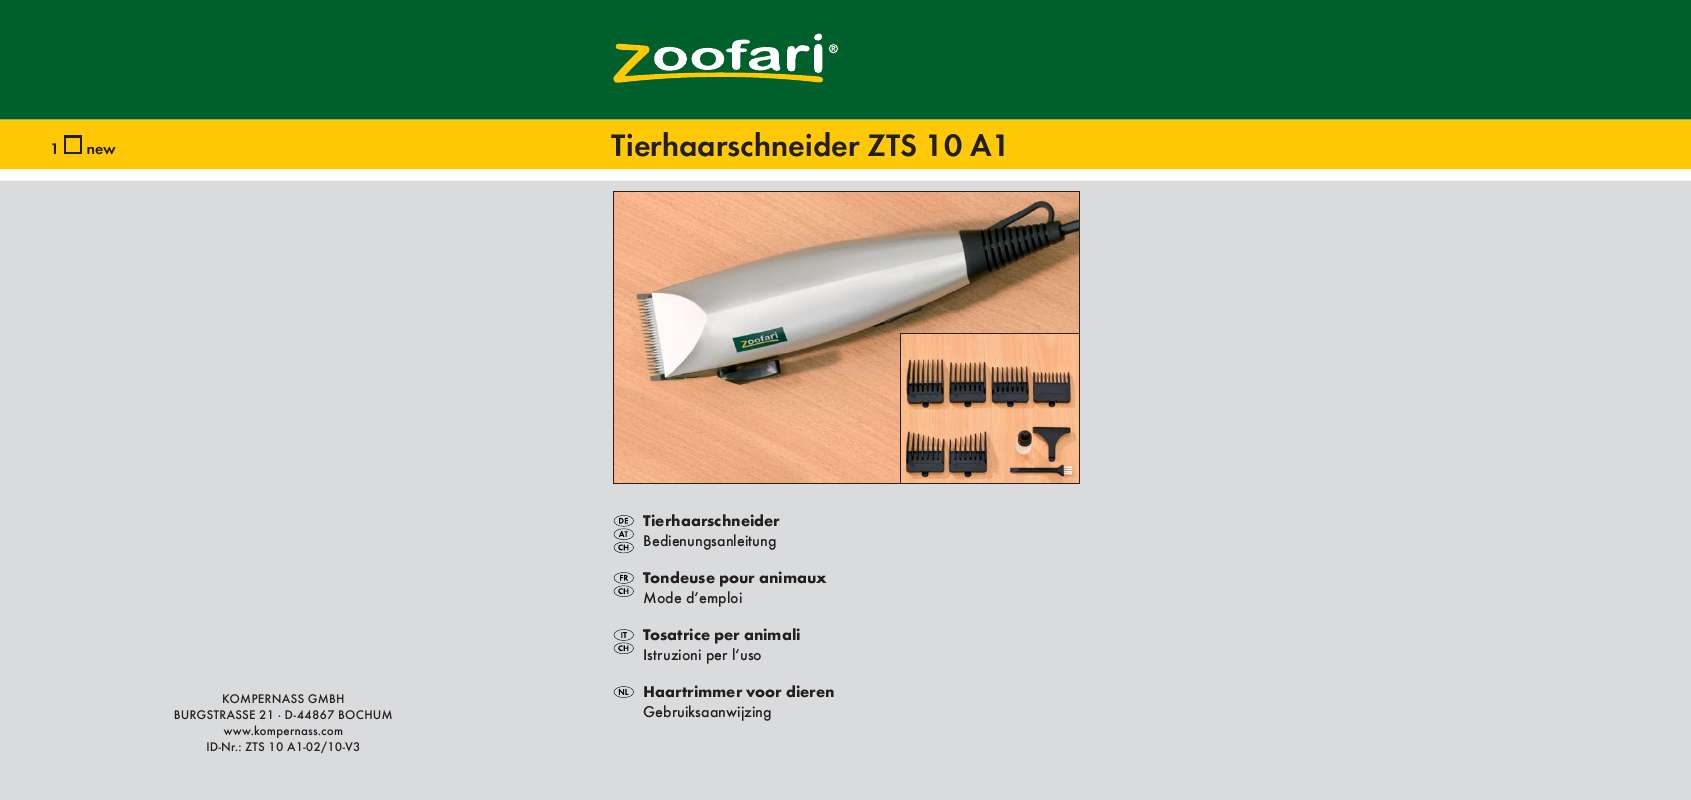 Guide utilisation  ZOOFARI ZTS 10 A1 ANIMAL CLIPPERS  de la marque ZOOFARI